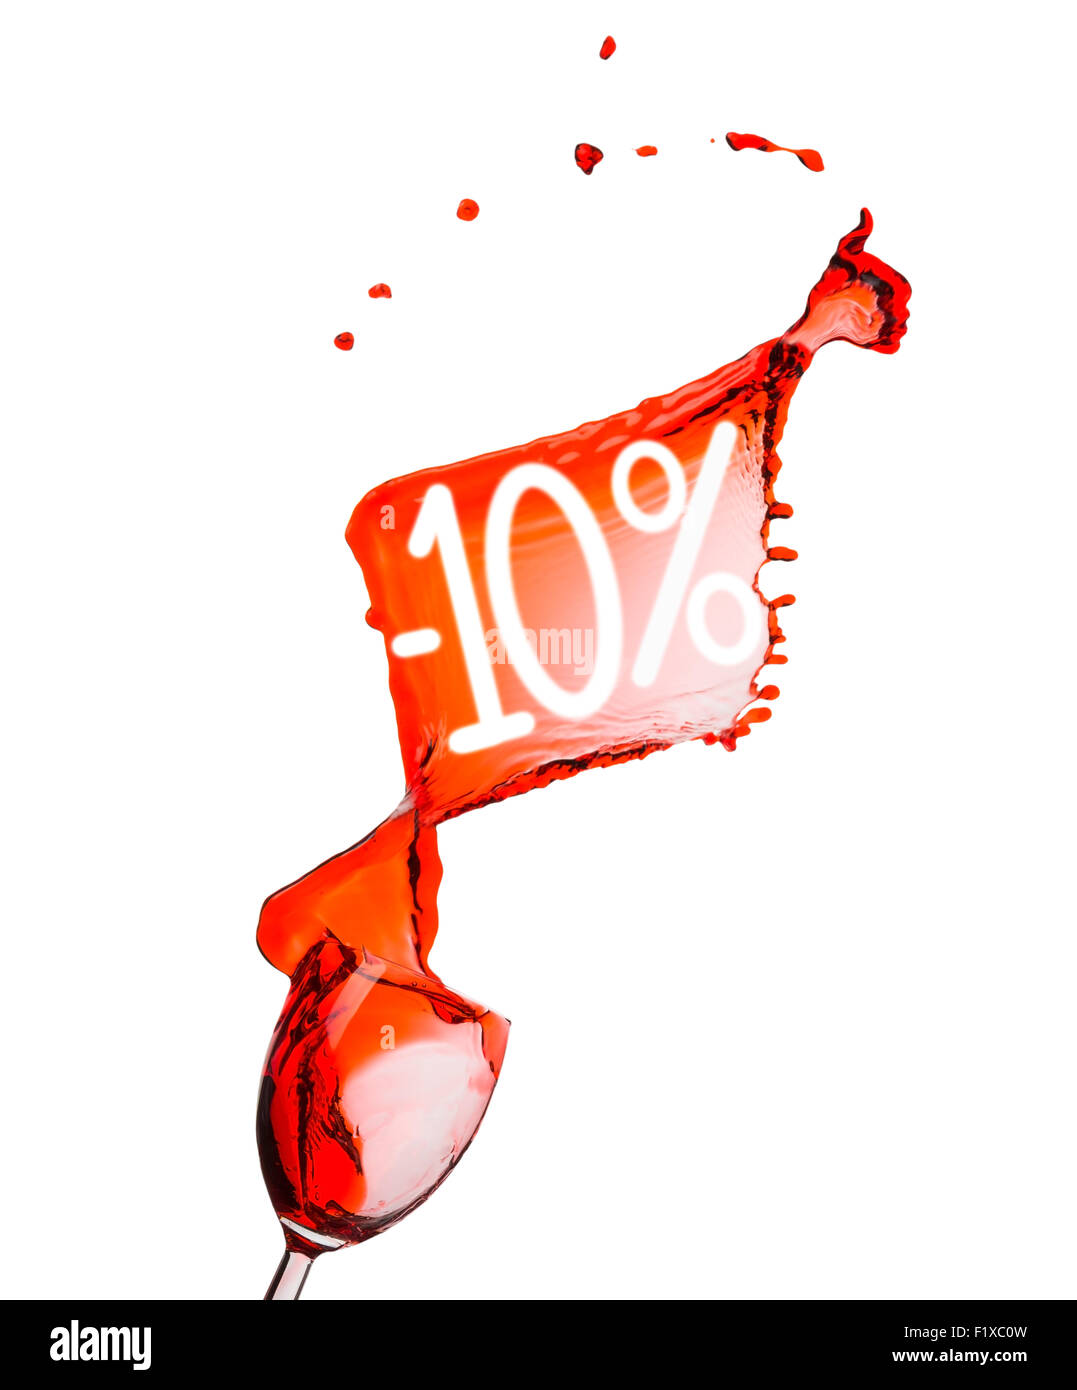 Vino rosso splash. 10% di sconto. Isolato su sfondo bianco. Foto Stock